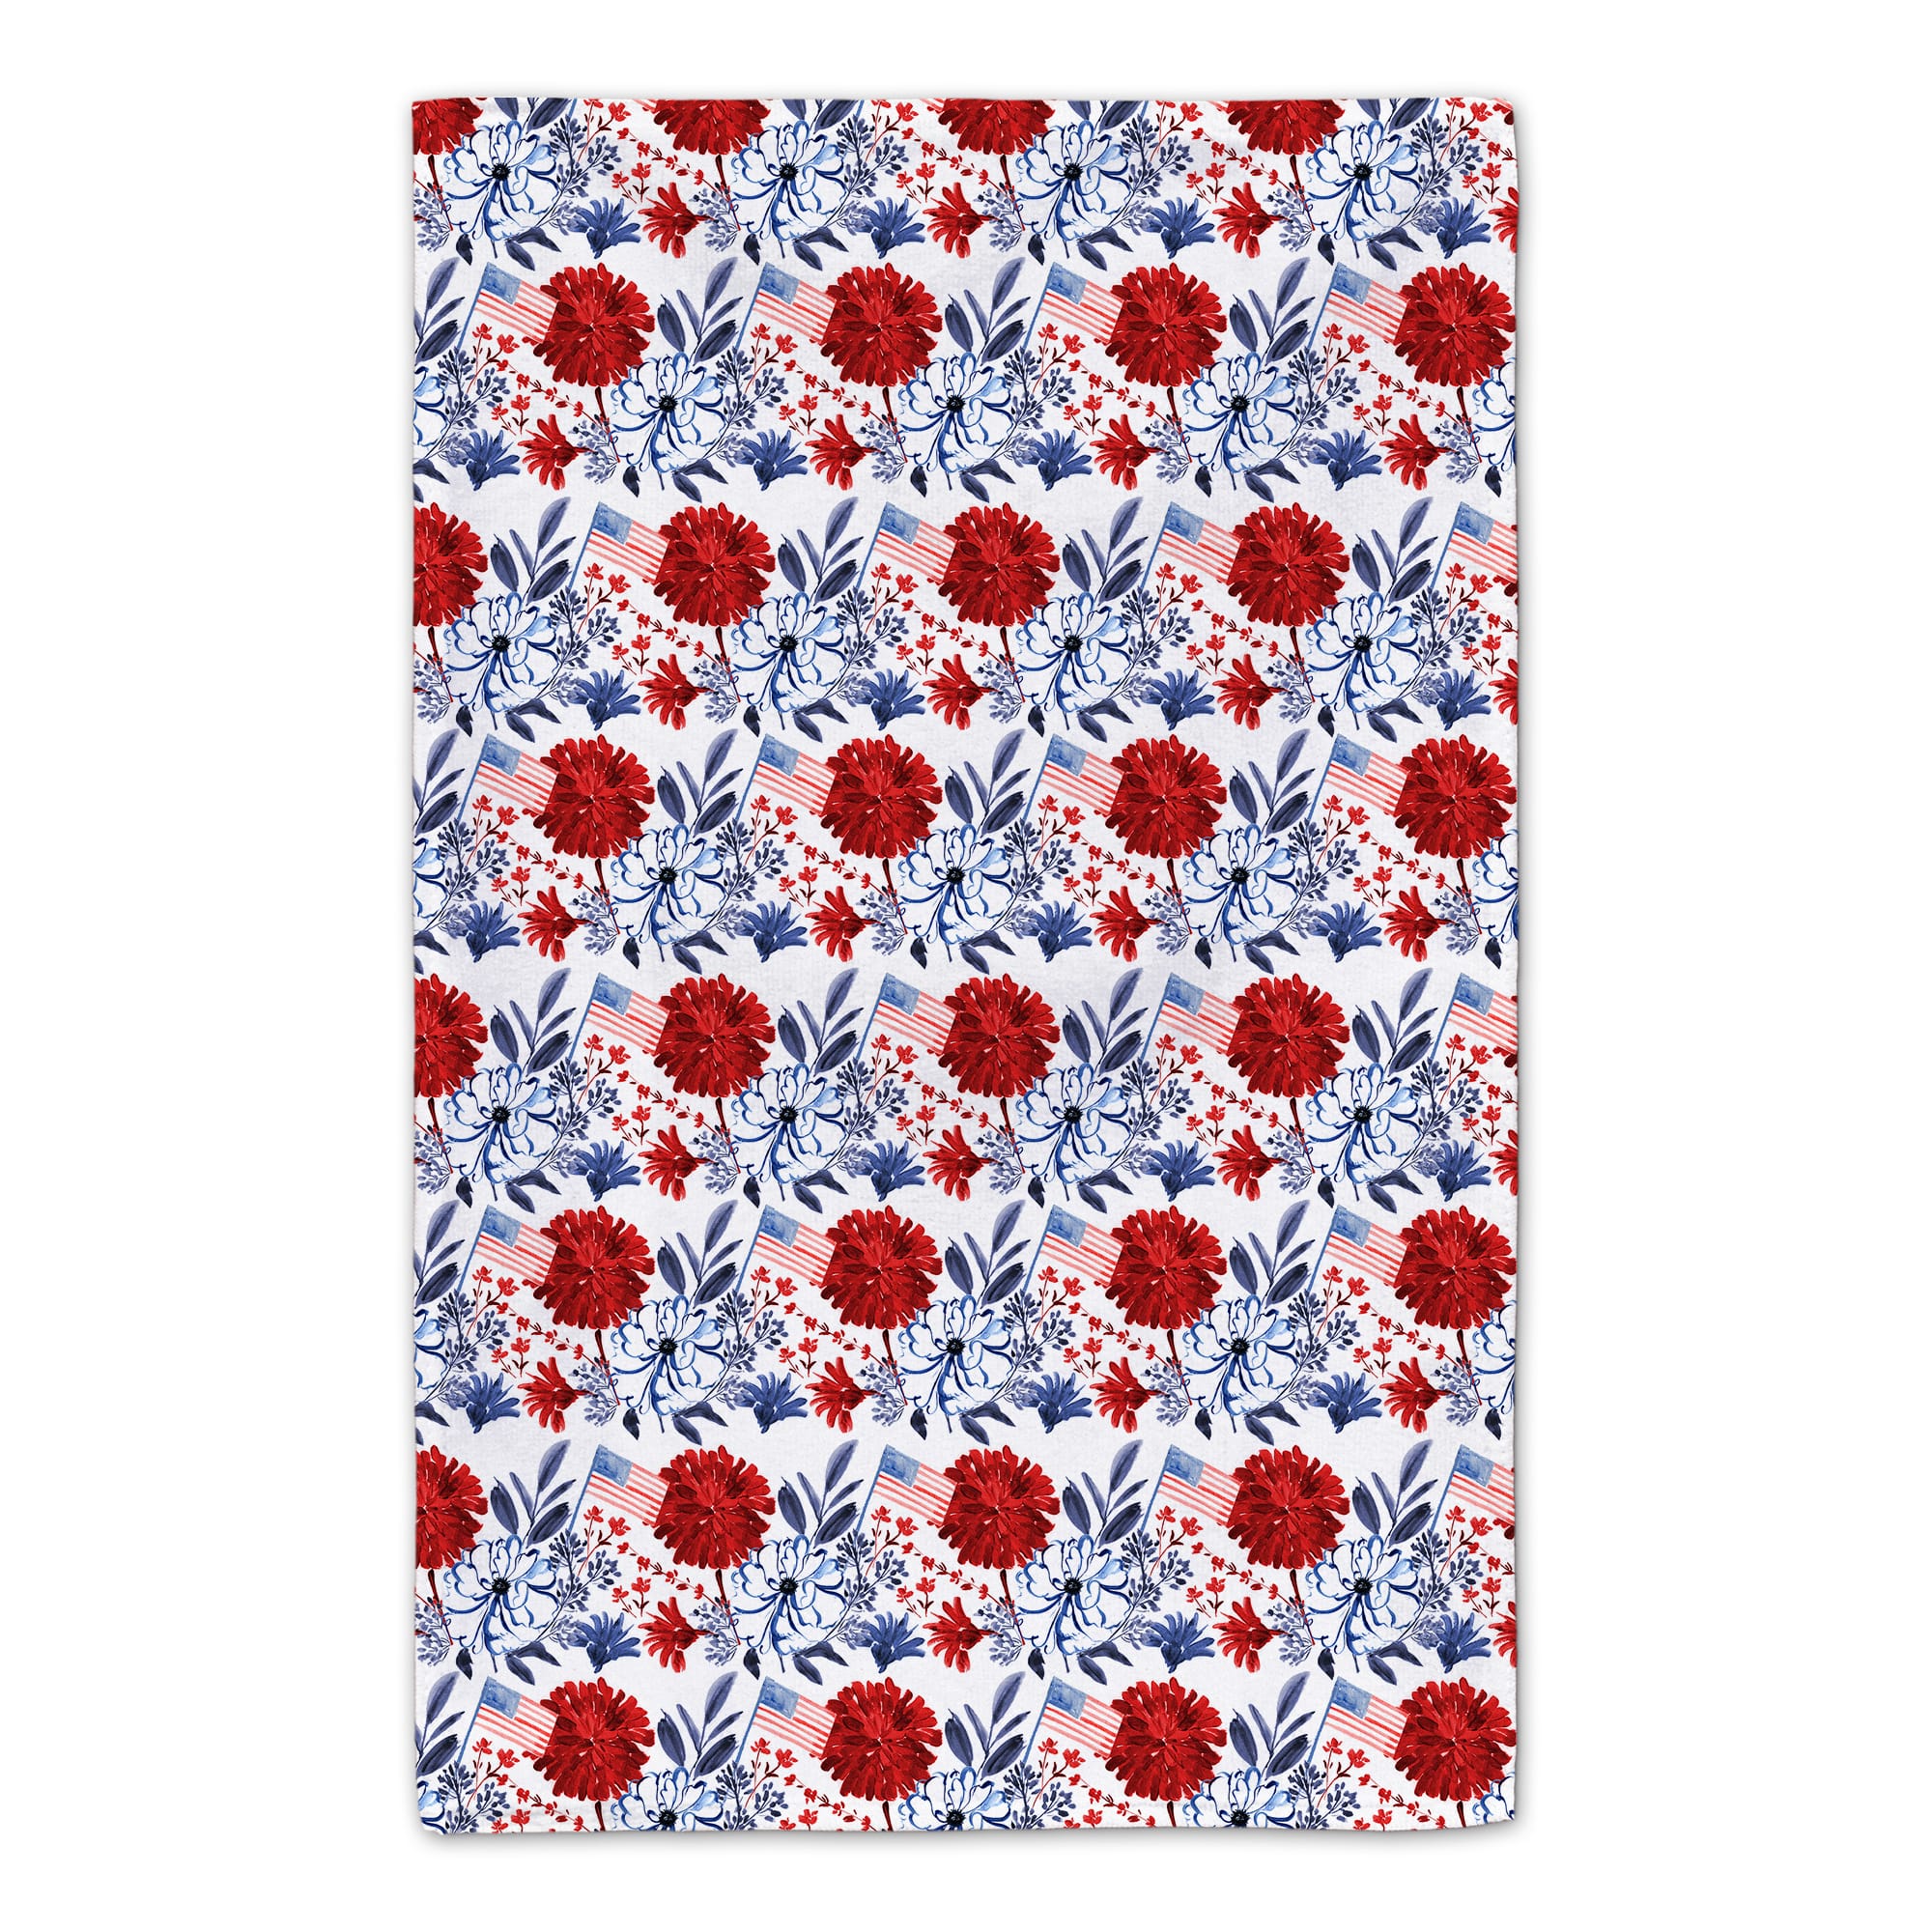 Mason Jar Patriotic Florals Tea Towel Set